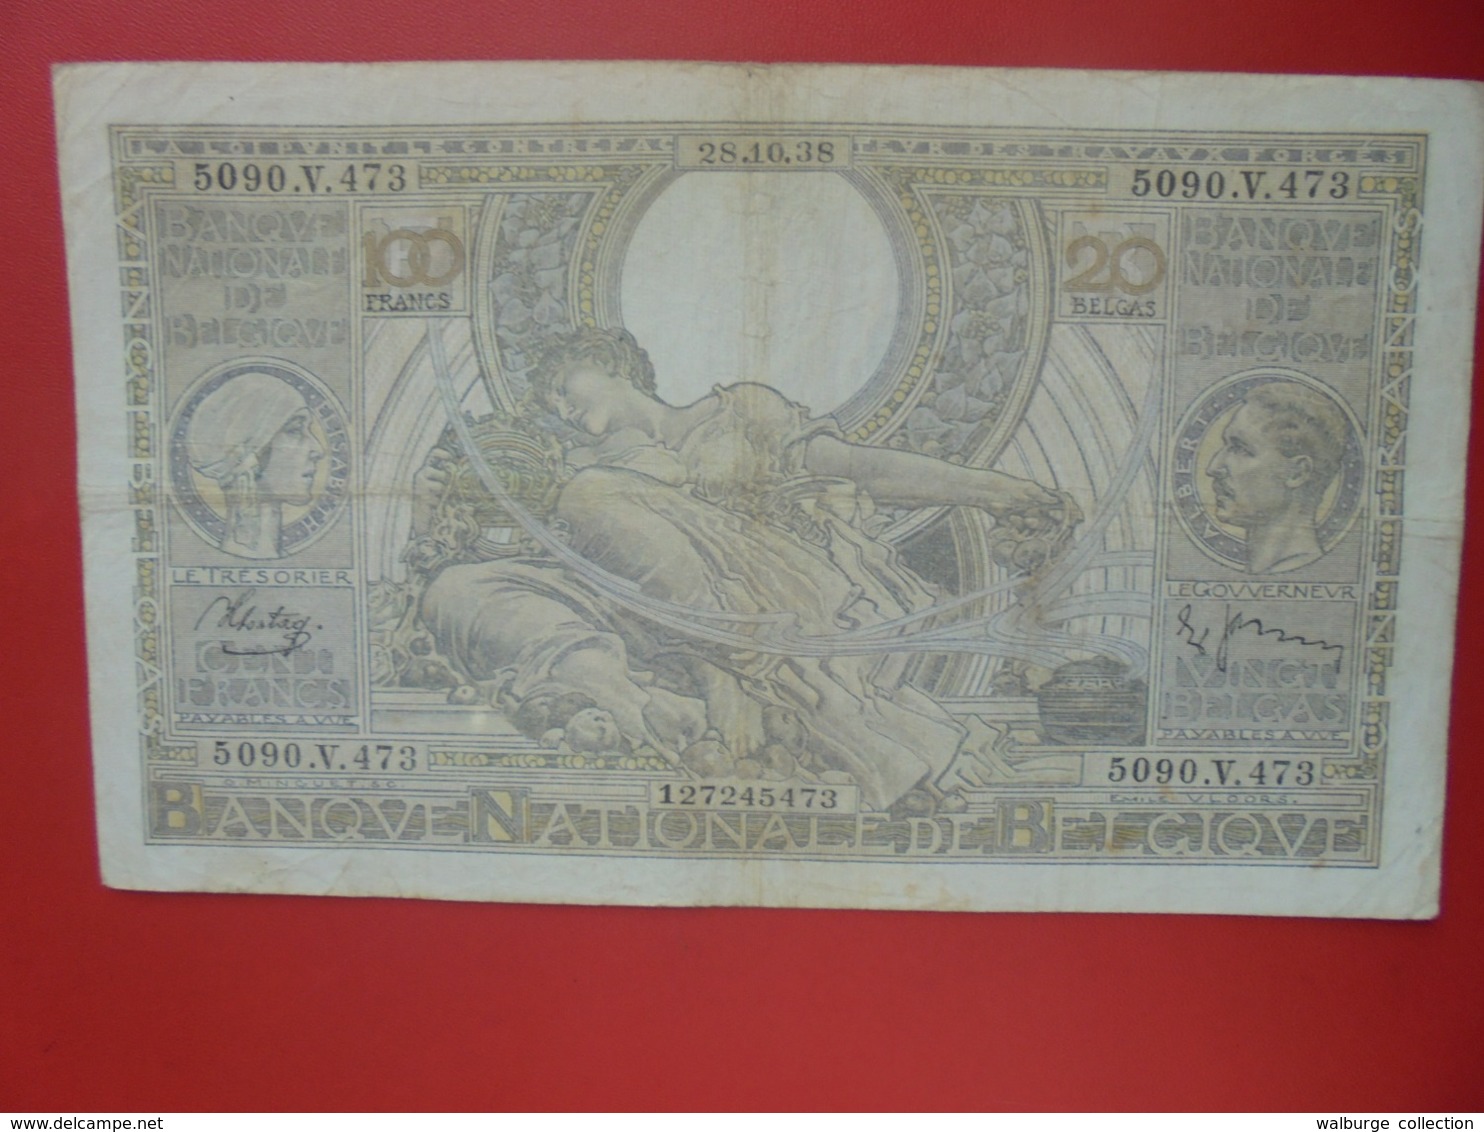 BELGIQUE 100 FRANCS 1938 CIRCULER (B.8) - 100 Francs & 100 Francs-20 Belgas